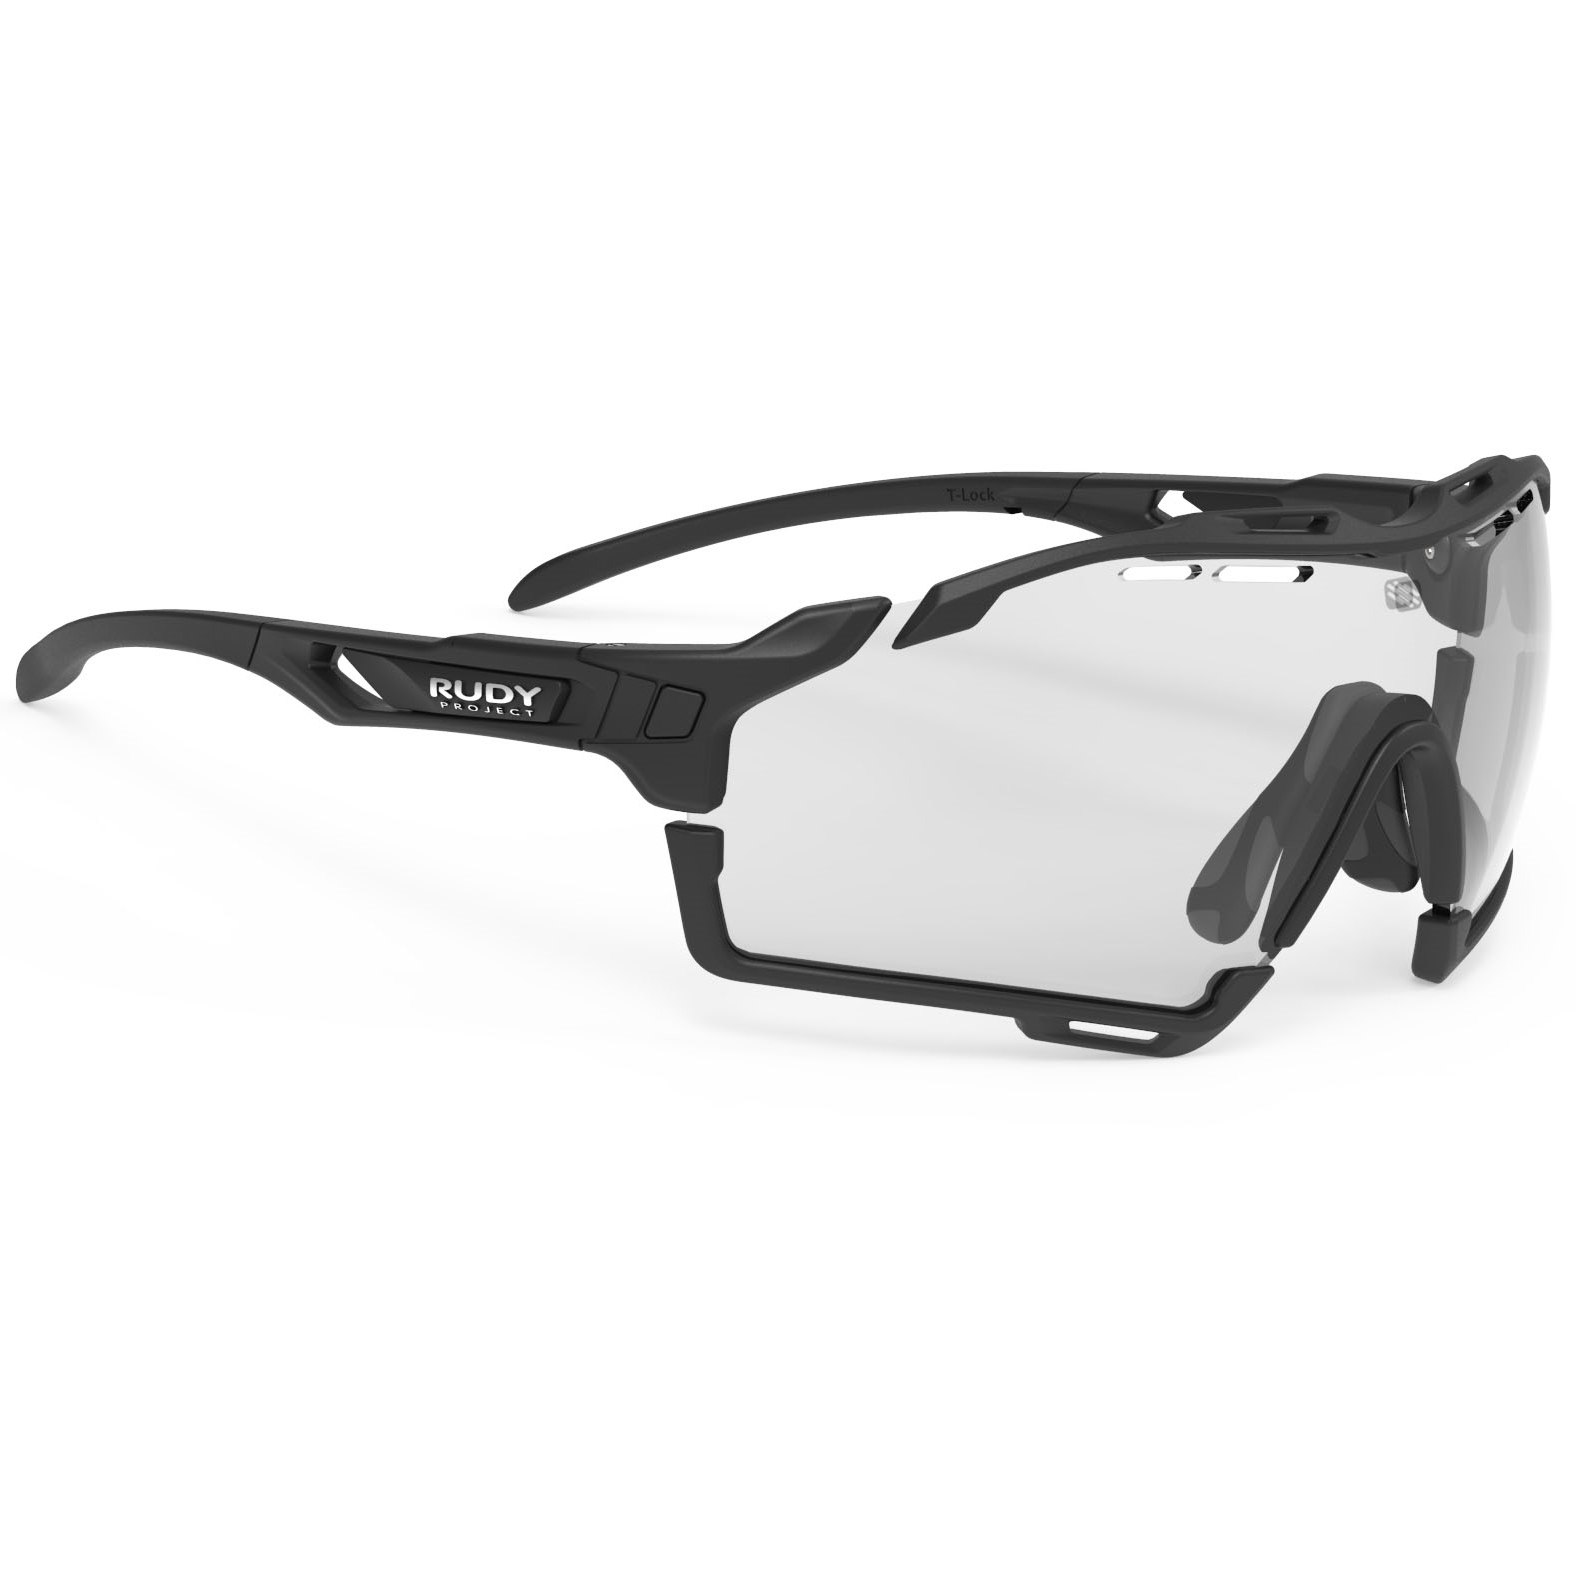 Productfoto van Rudy Project Cutline Glasses - Photochromic Lens - Black Matte / ImpactX 2 Black